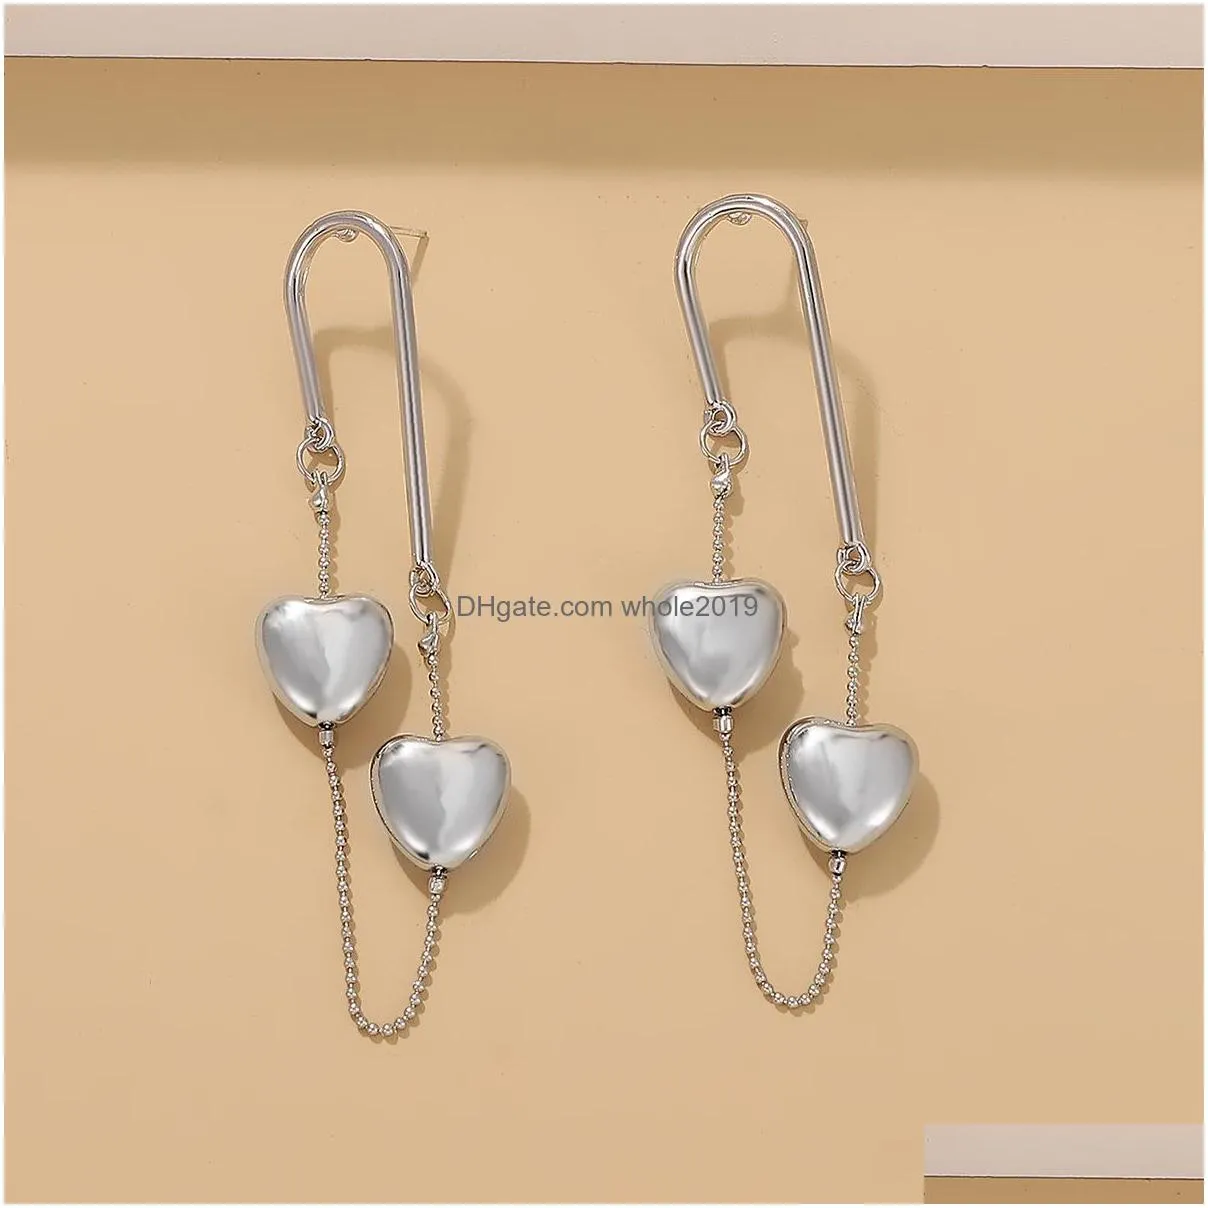 fashion jewelry tassels love earrings for women retro metal long geometric heart chains dangle stud earrings